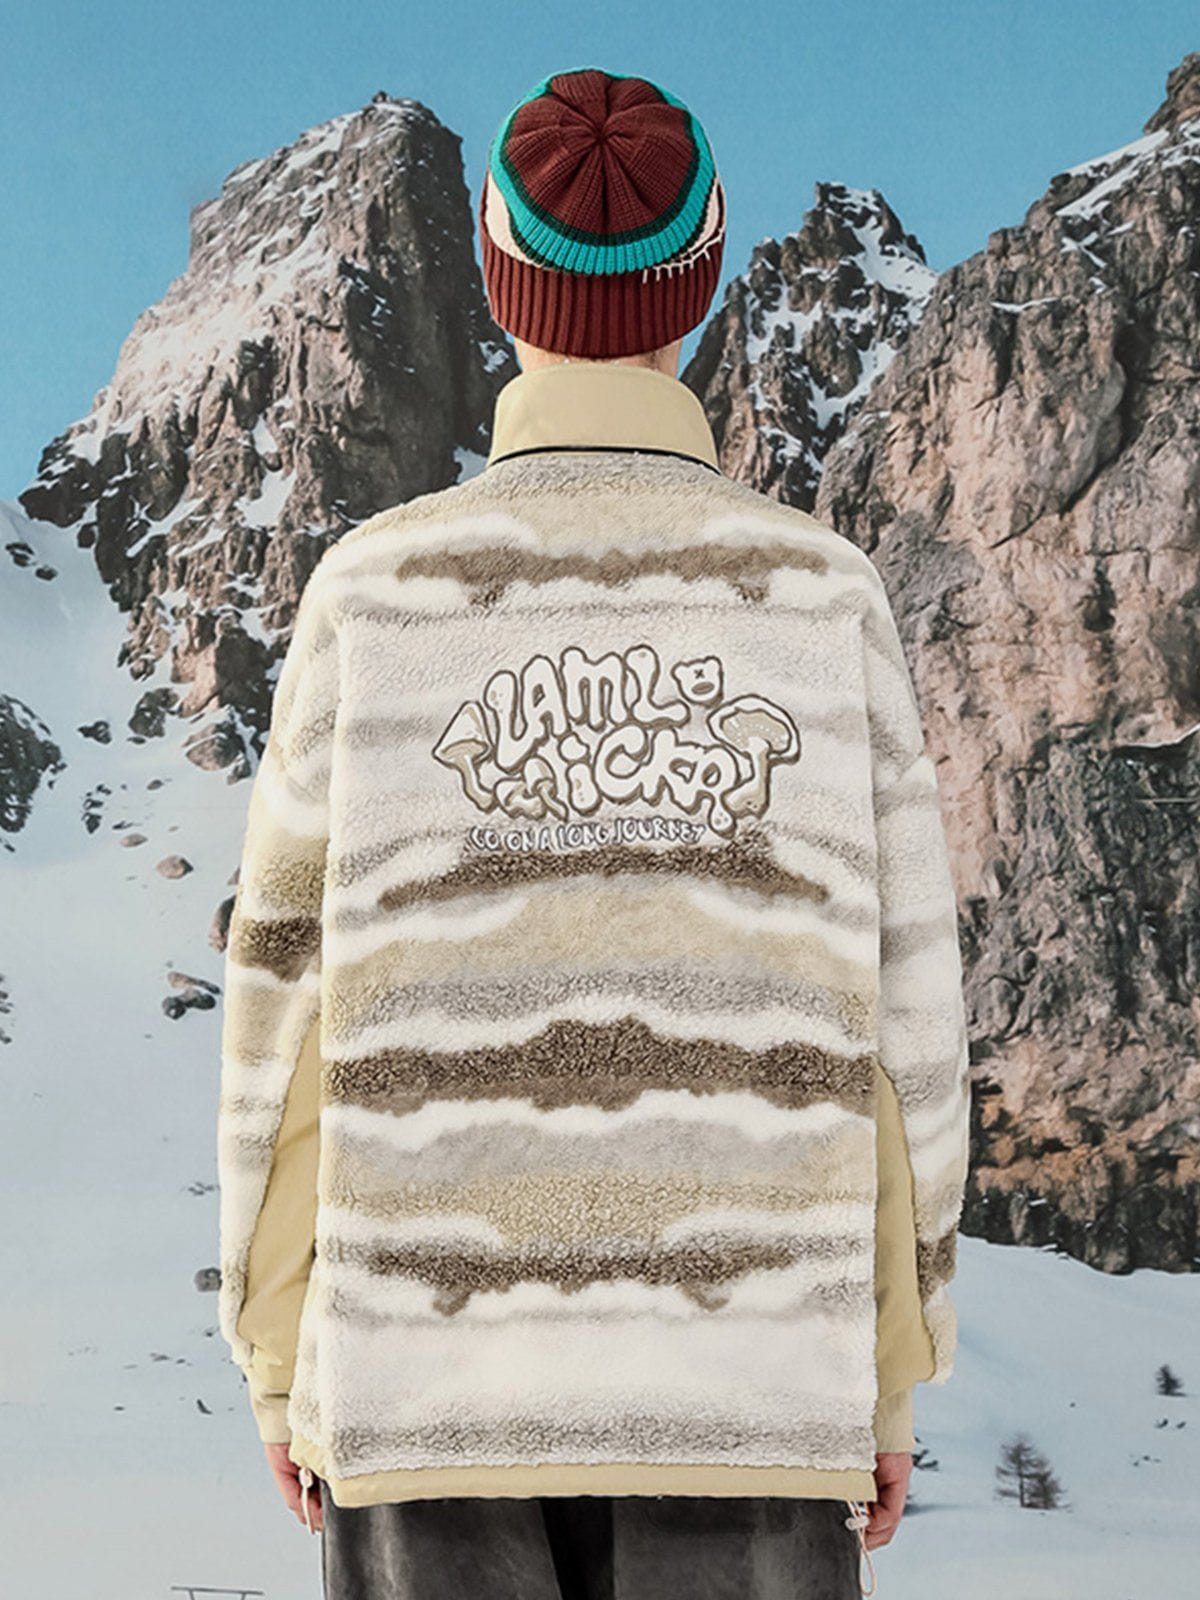 LUXENFY™ - Snow Mountain Tie Dye Sweatshirt luxenfy.com